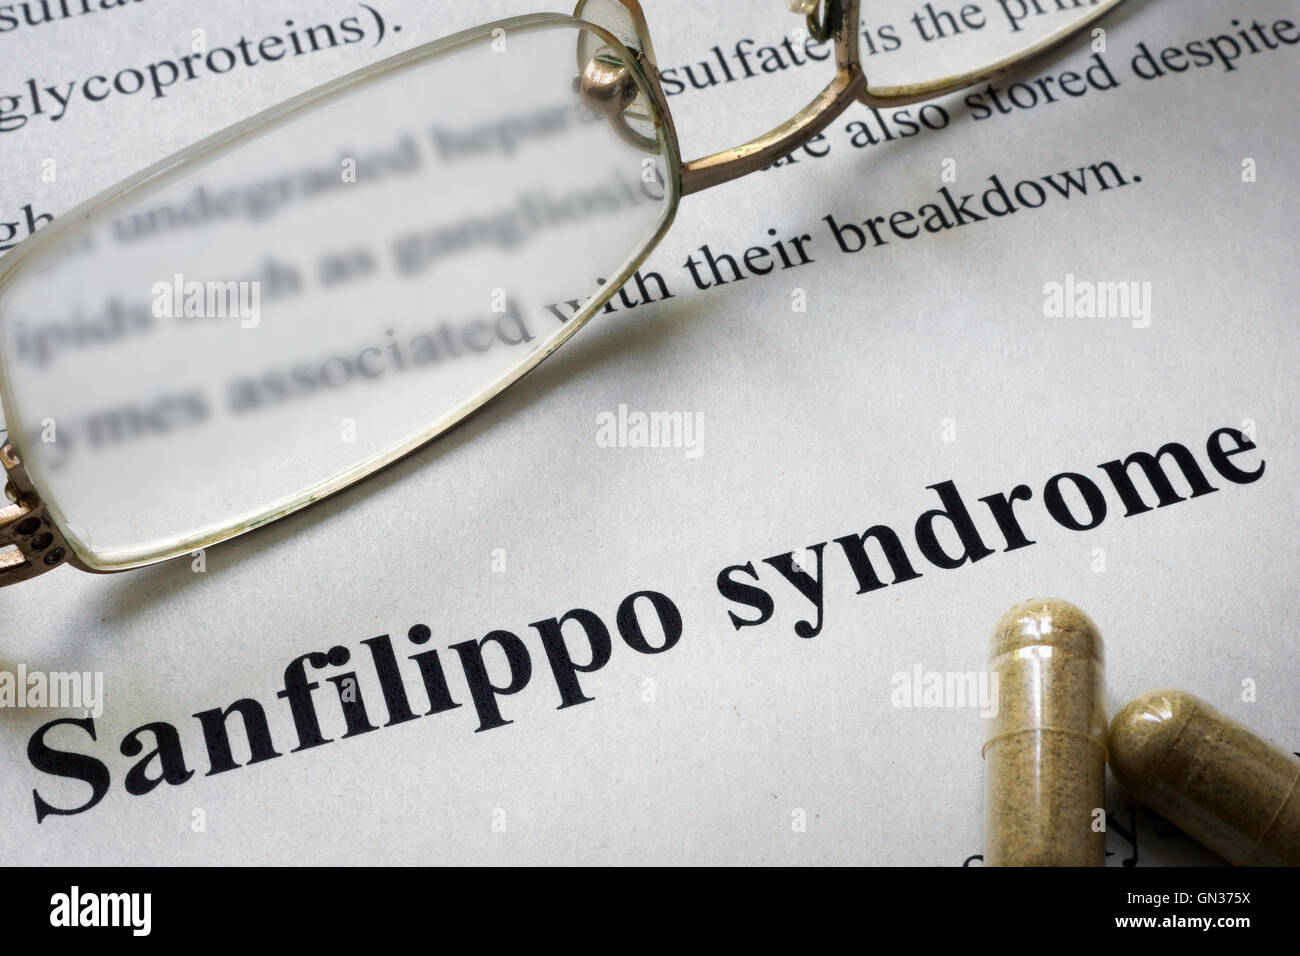 Papier avec syndrome de Sanfilippo mots et verres. Concept médical. Banque D'Images